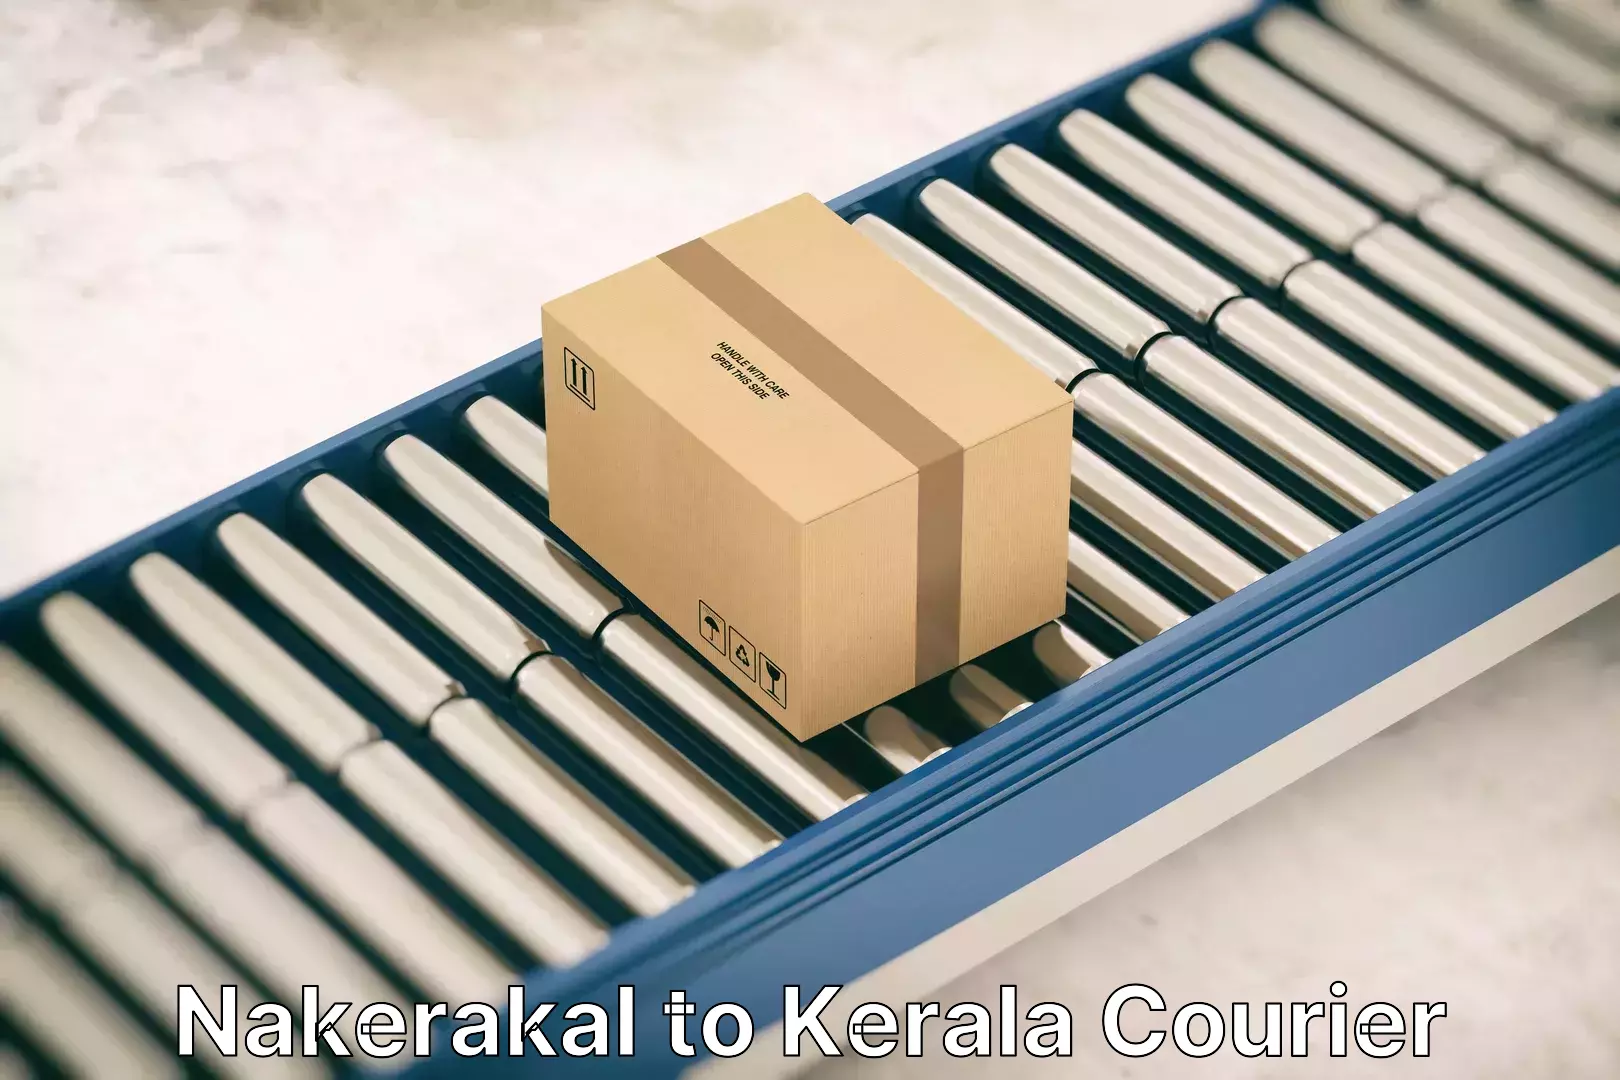 Efficient moving company Nakerakal to Kerala